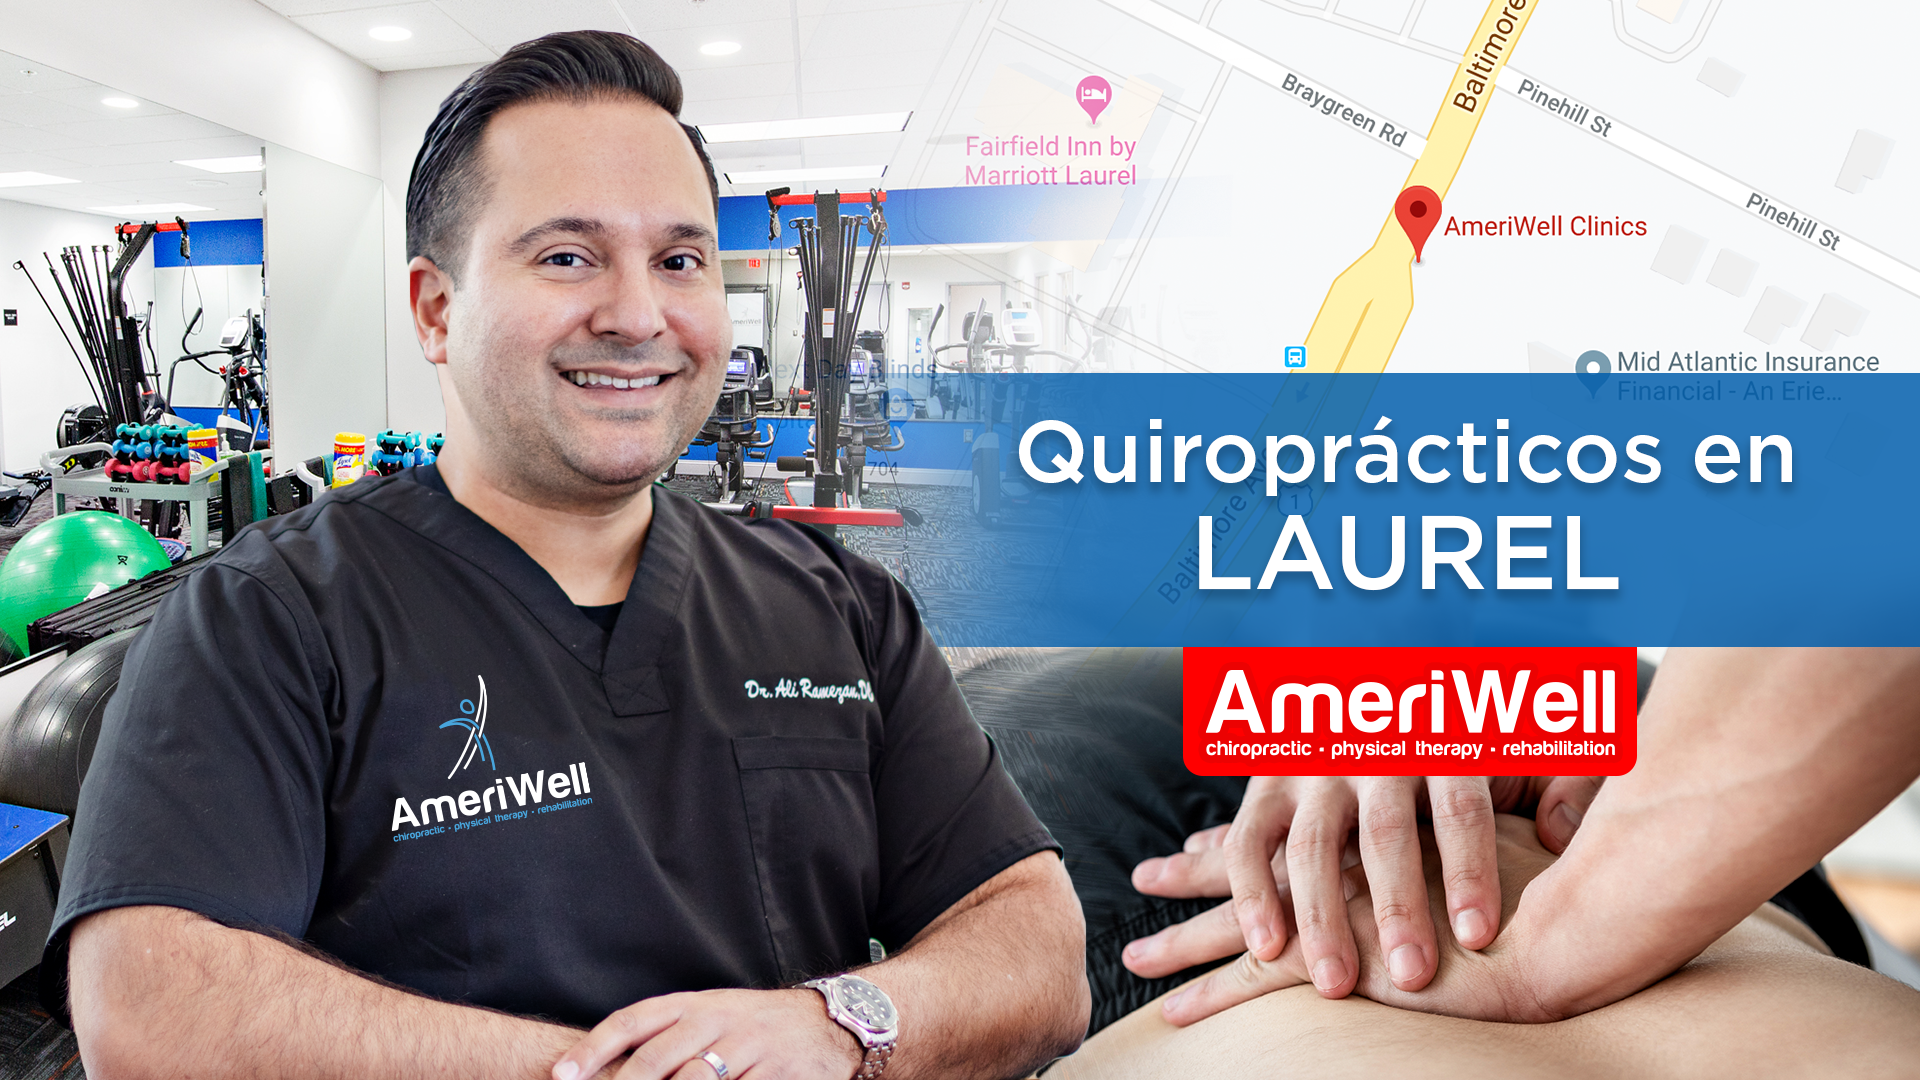 Laurel – Ameriwell Clinics los mejores Quiroprácticos